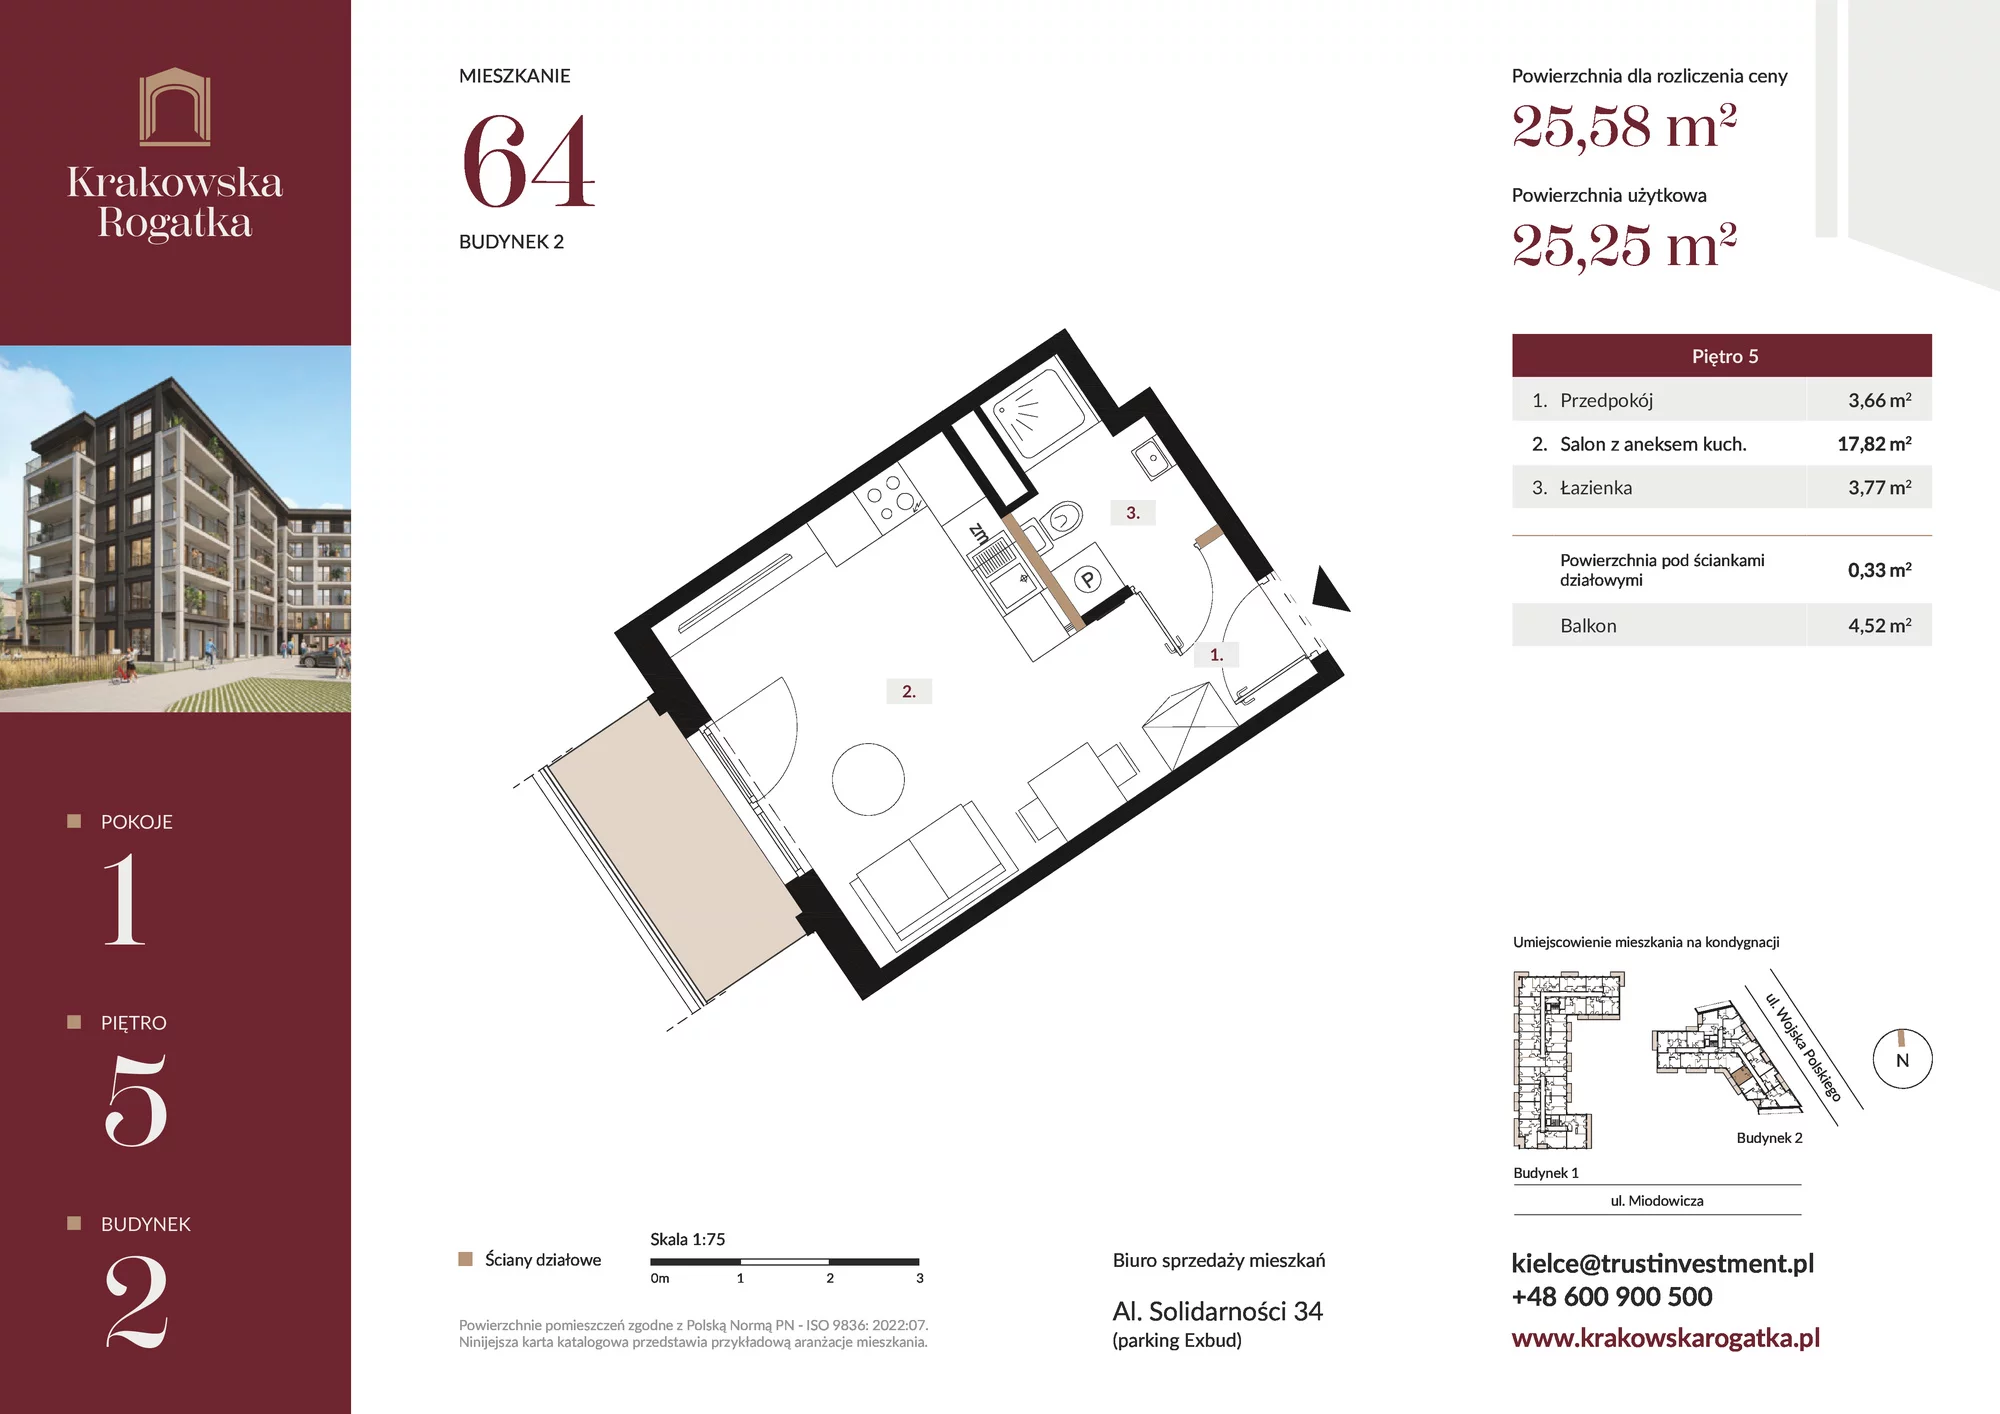 Mieszkanie 25,58 m², piętro 5, oferta nr Budynek 2 Mieszkanie 64, Krakowska Rogatka, Kielce, ul. Miodowicza 1